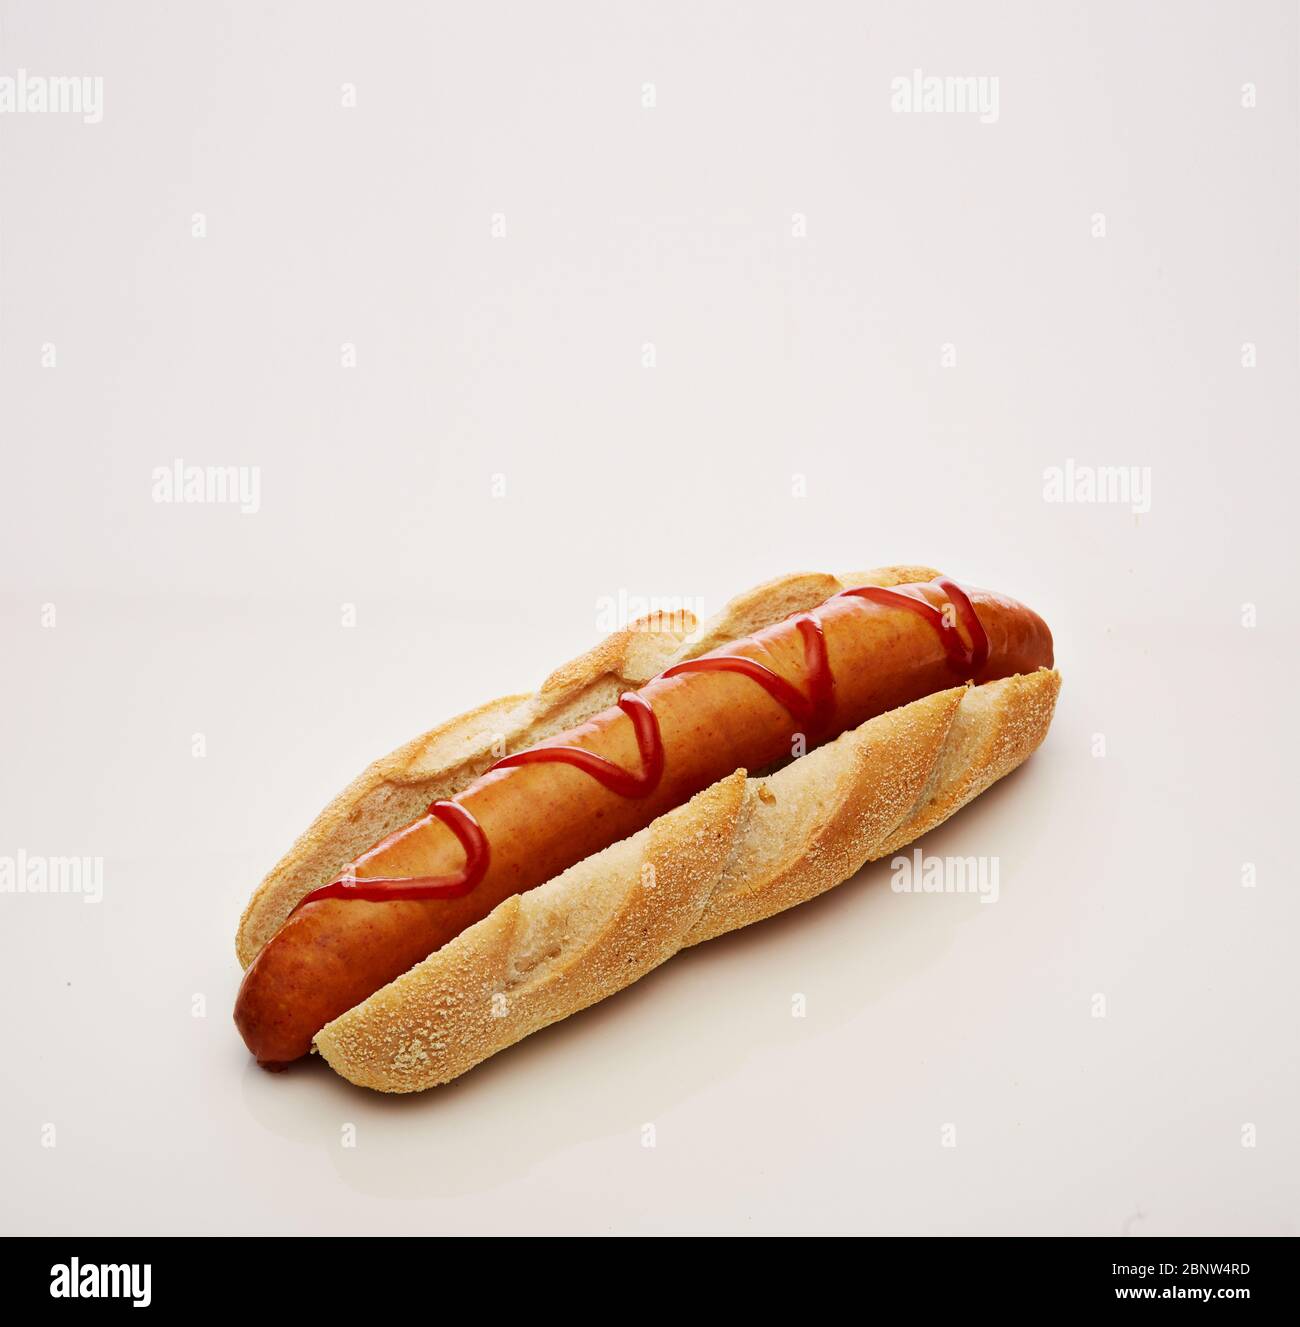 Aufnahme eines Hot Dogs mit großer Wurst und Ketchup isoliert auf weißem Hintergrund Stockfoto